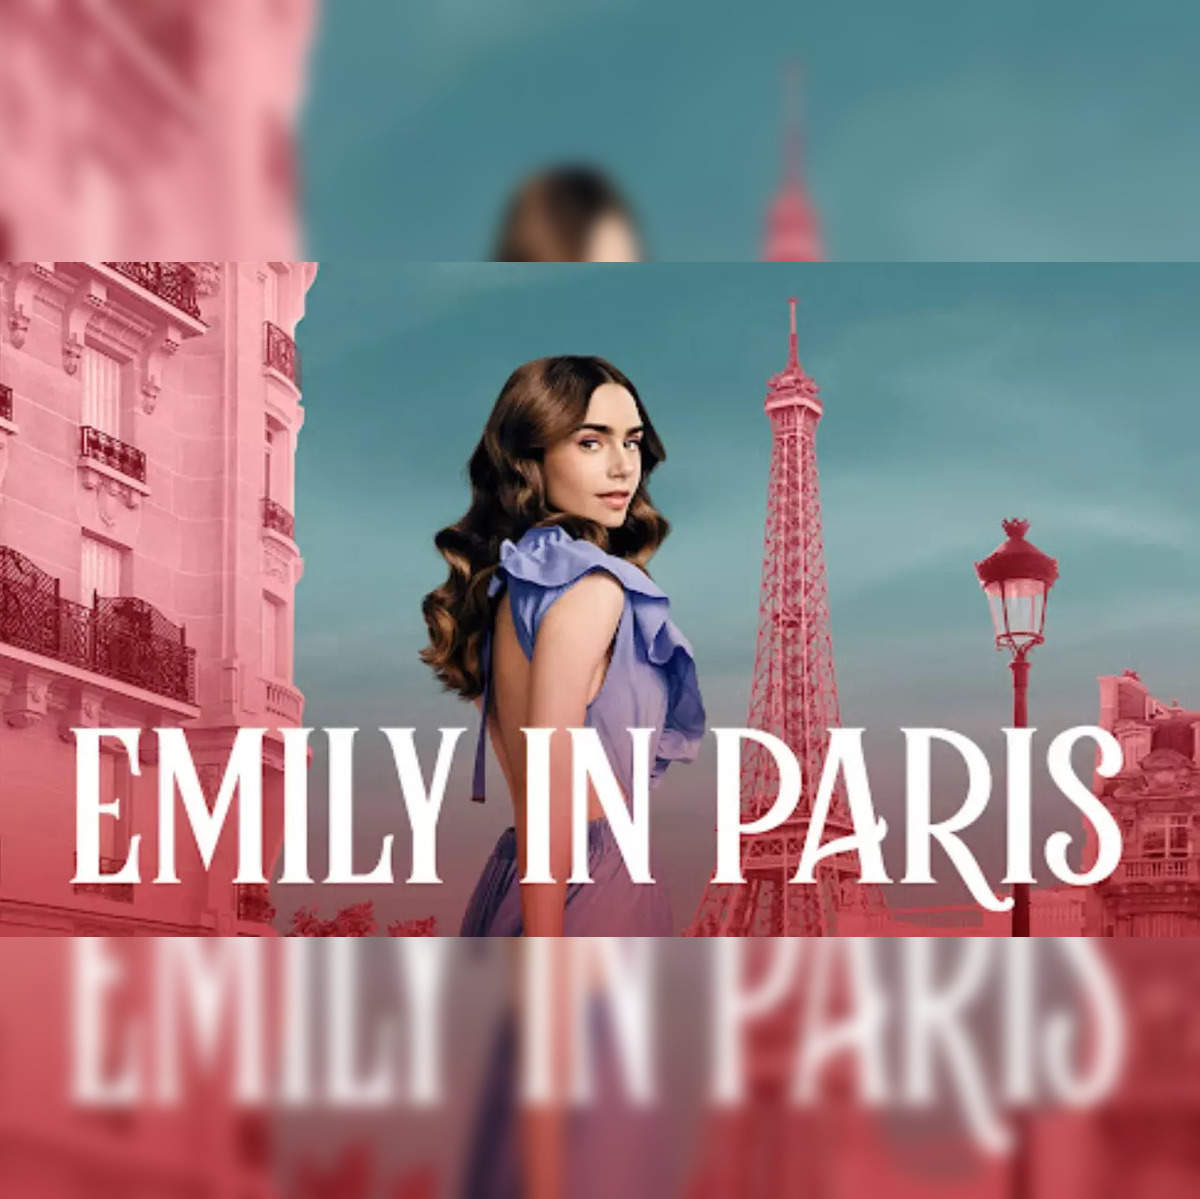 emily in paris cast